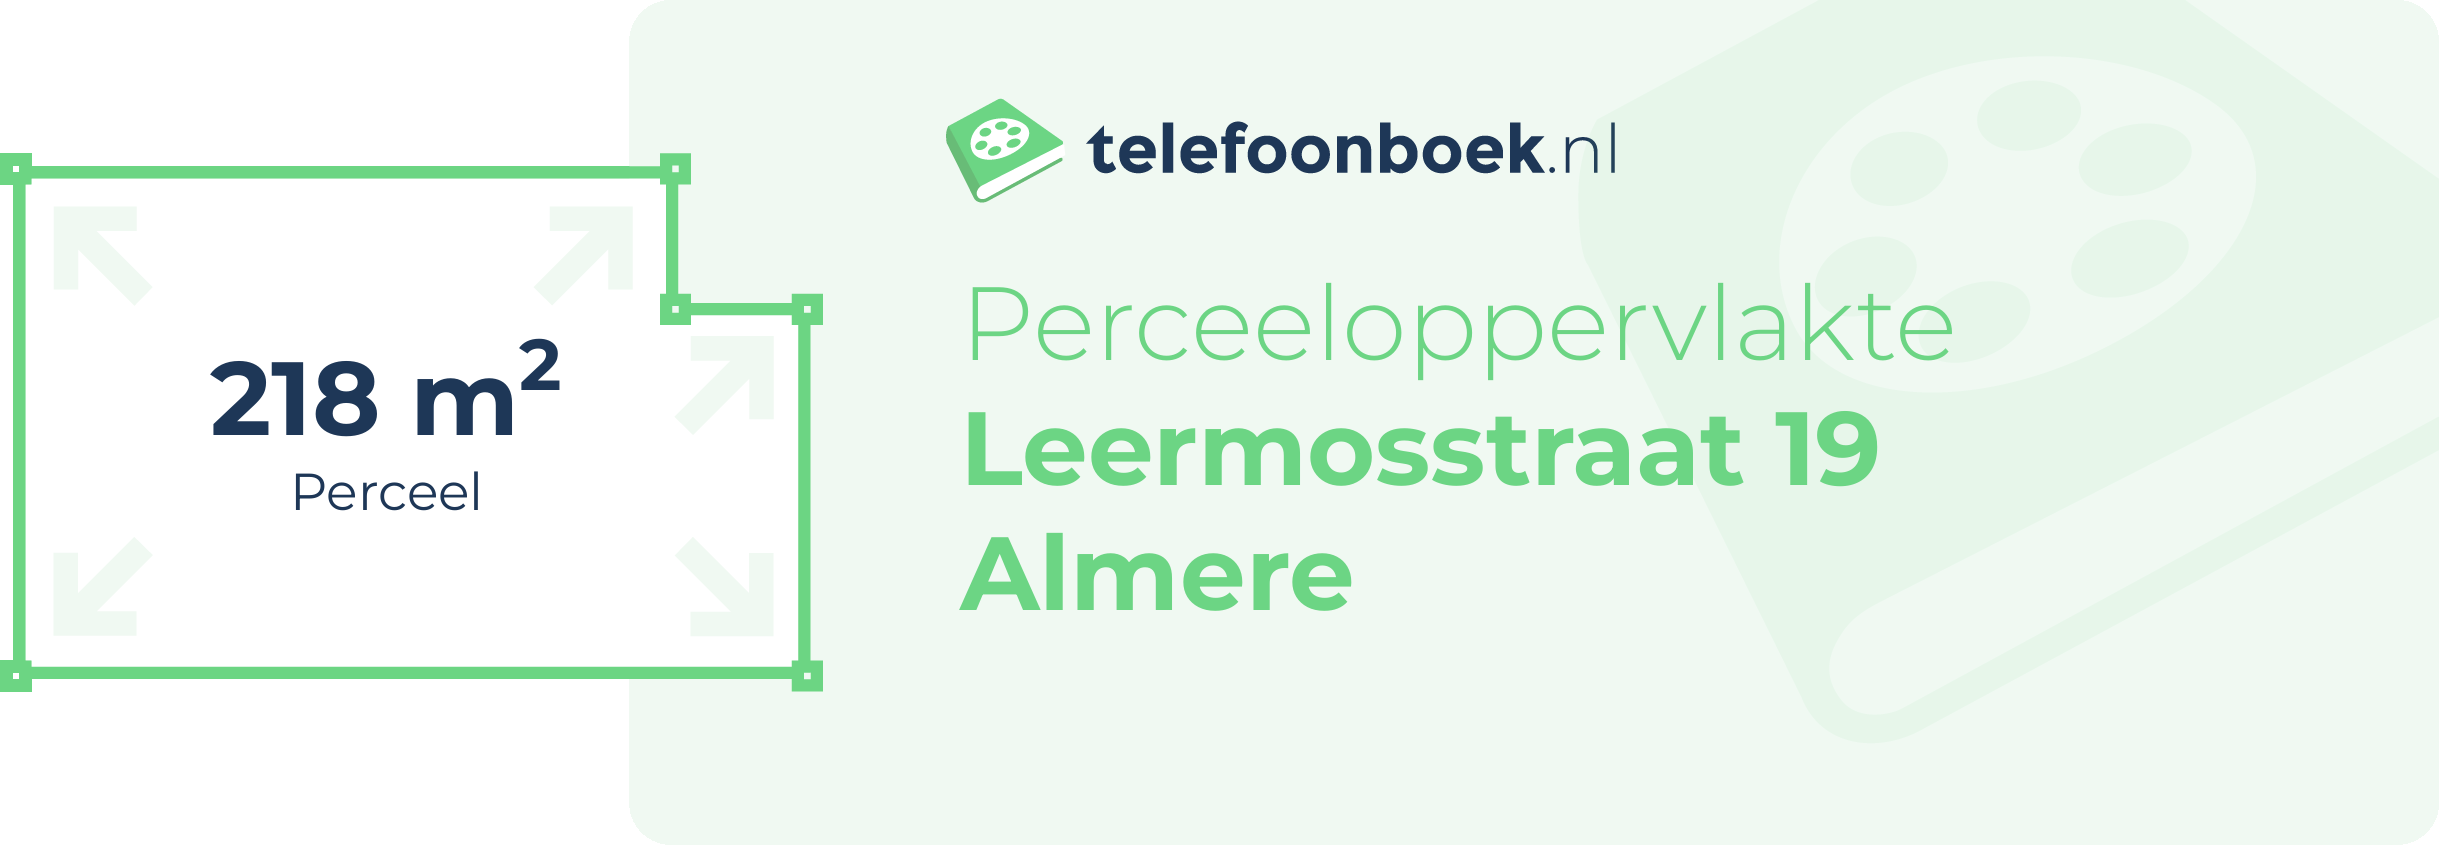 Perceeloppervlakte Leermosstraat 19 Almere